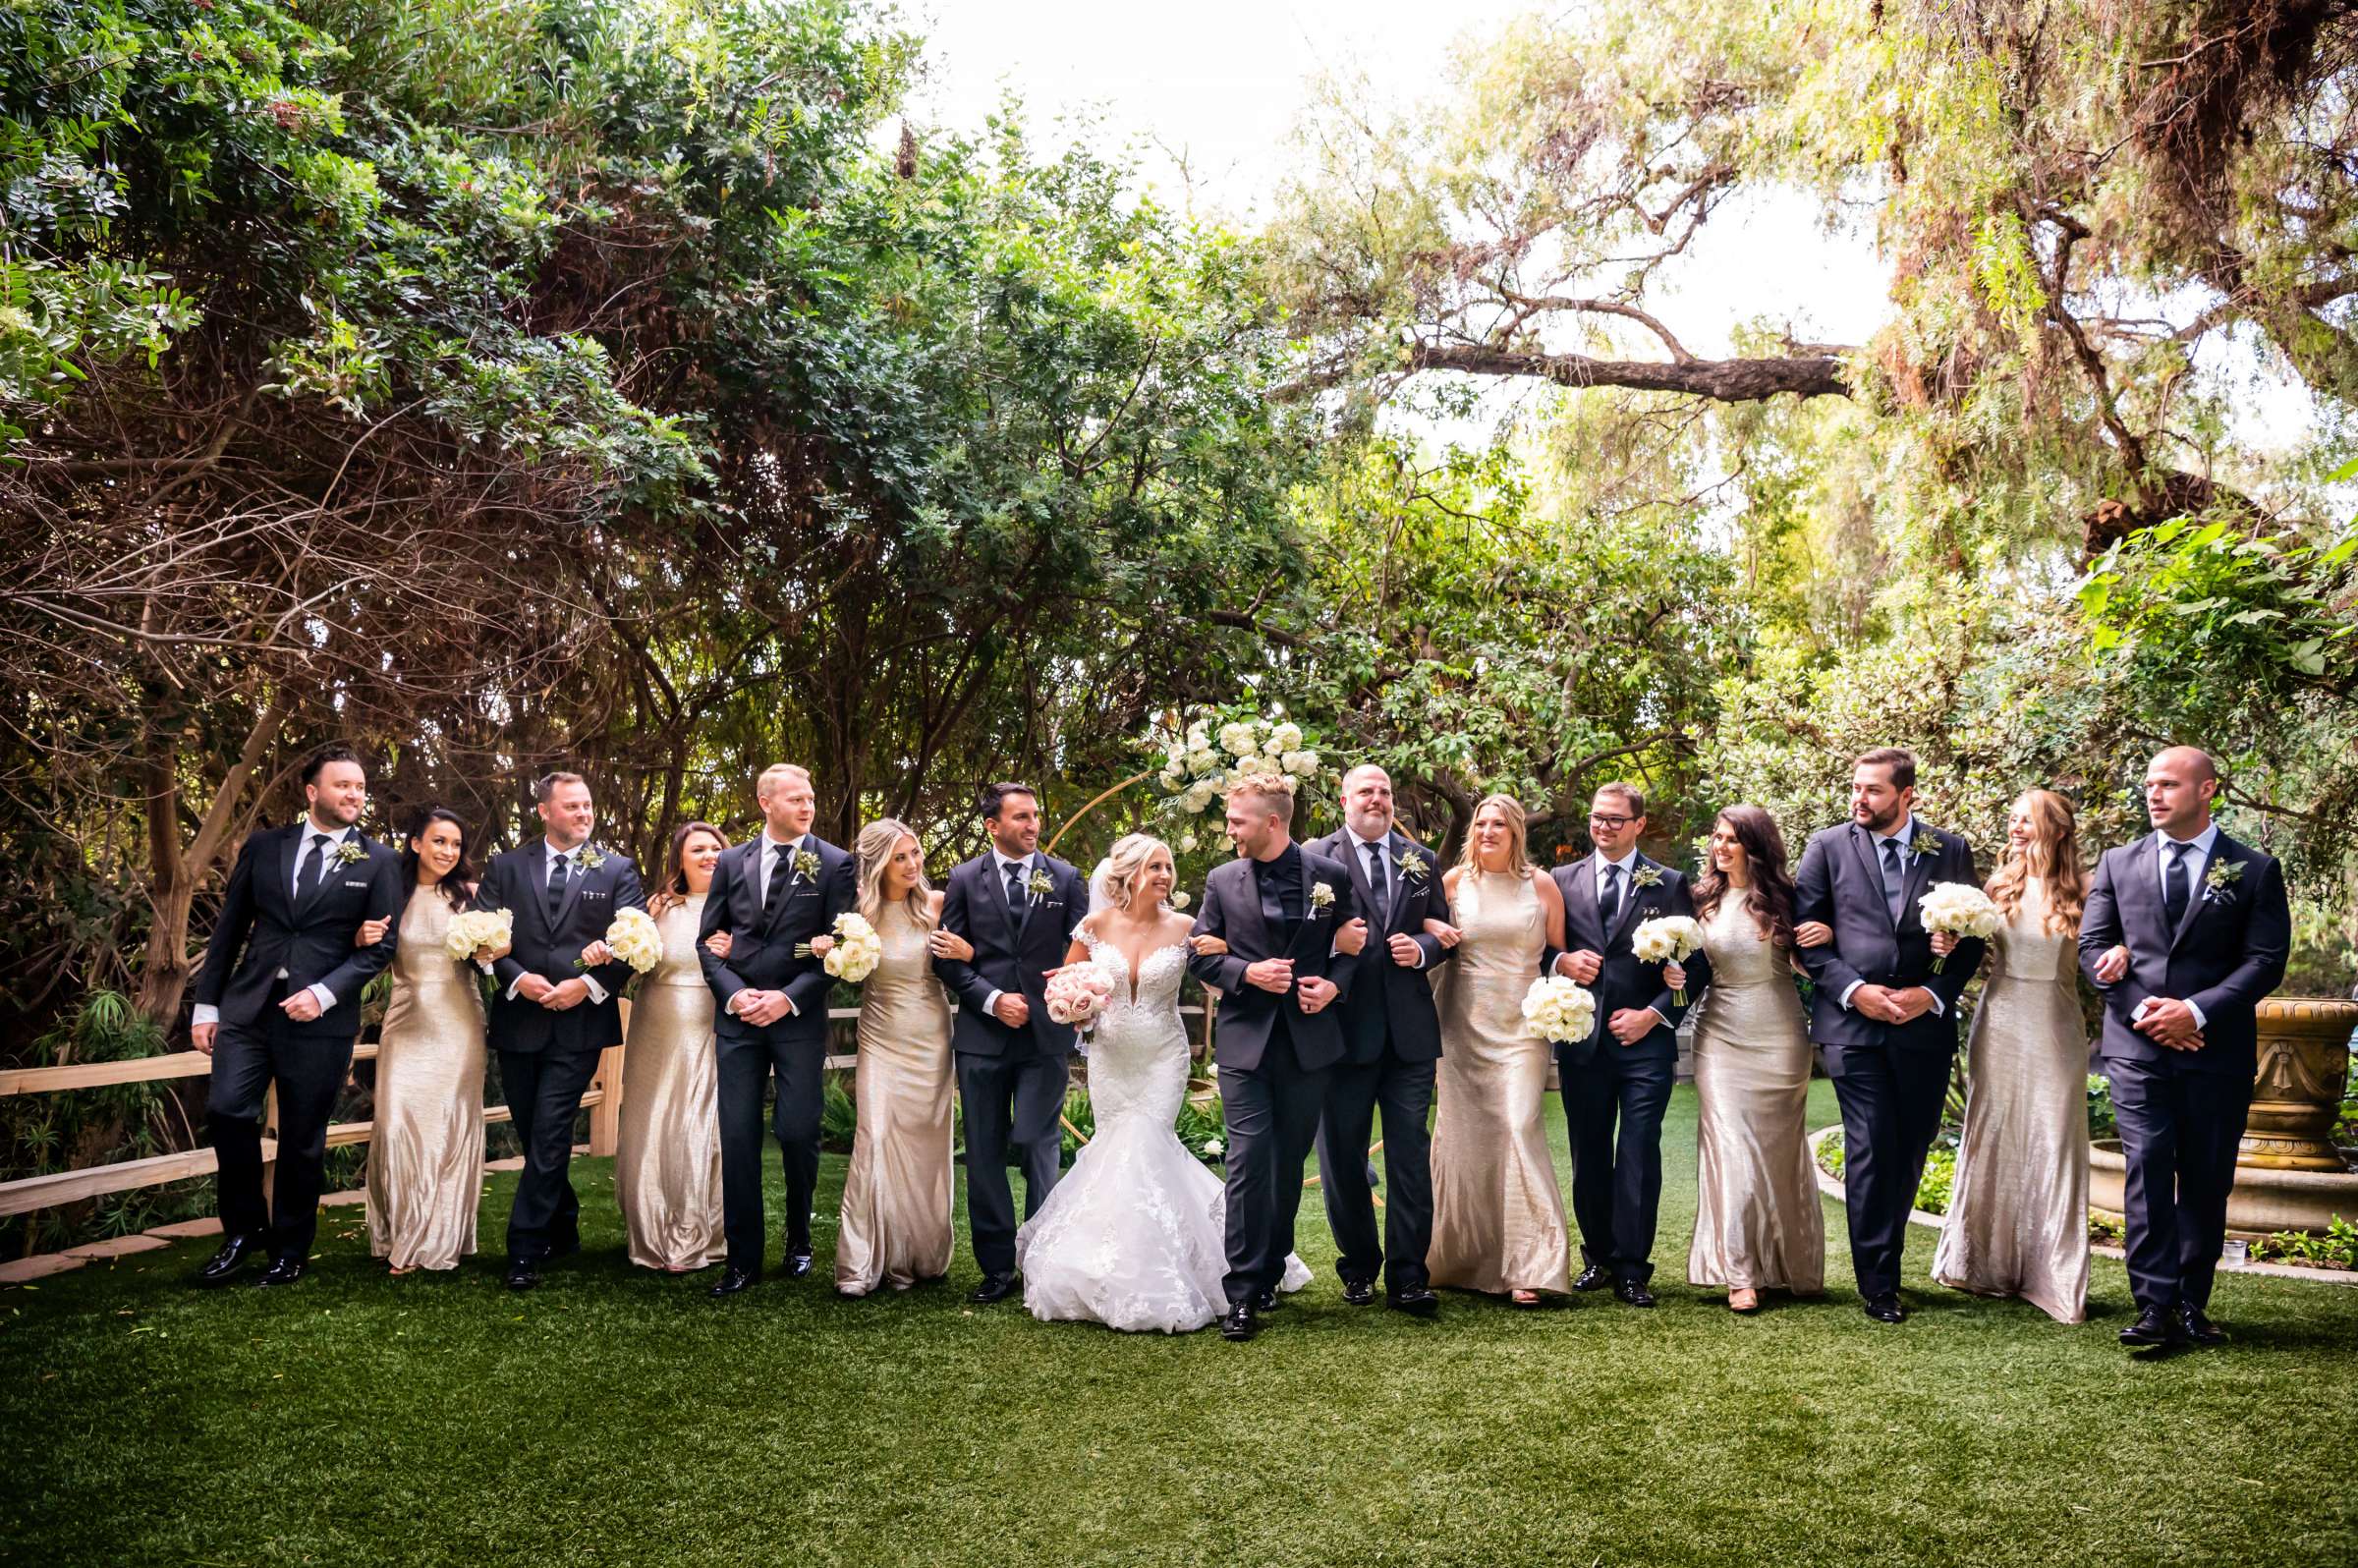 Green Gables Wedding Estate Wedding, Tiffanie and Daniel Wedding Photo #10 by True Photography